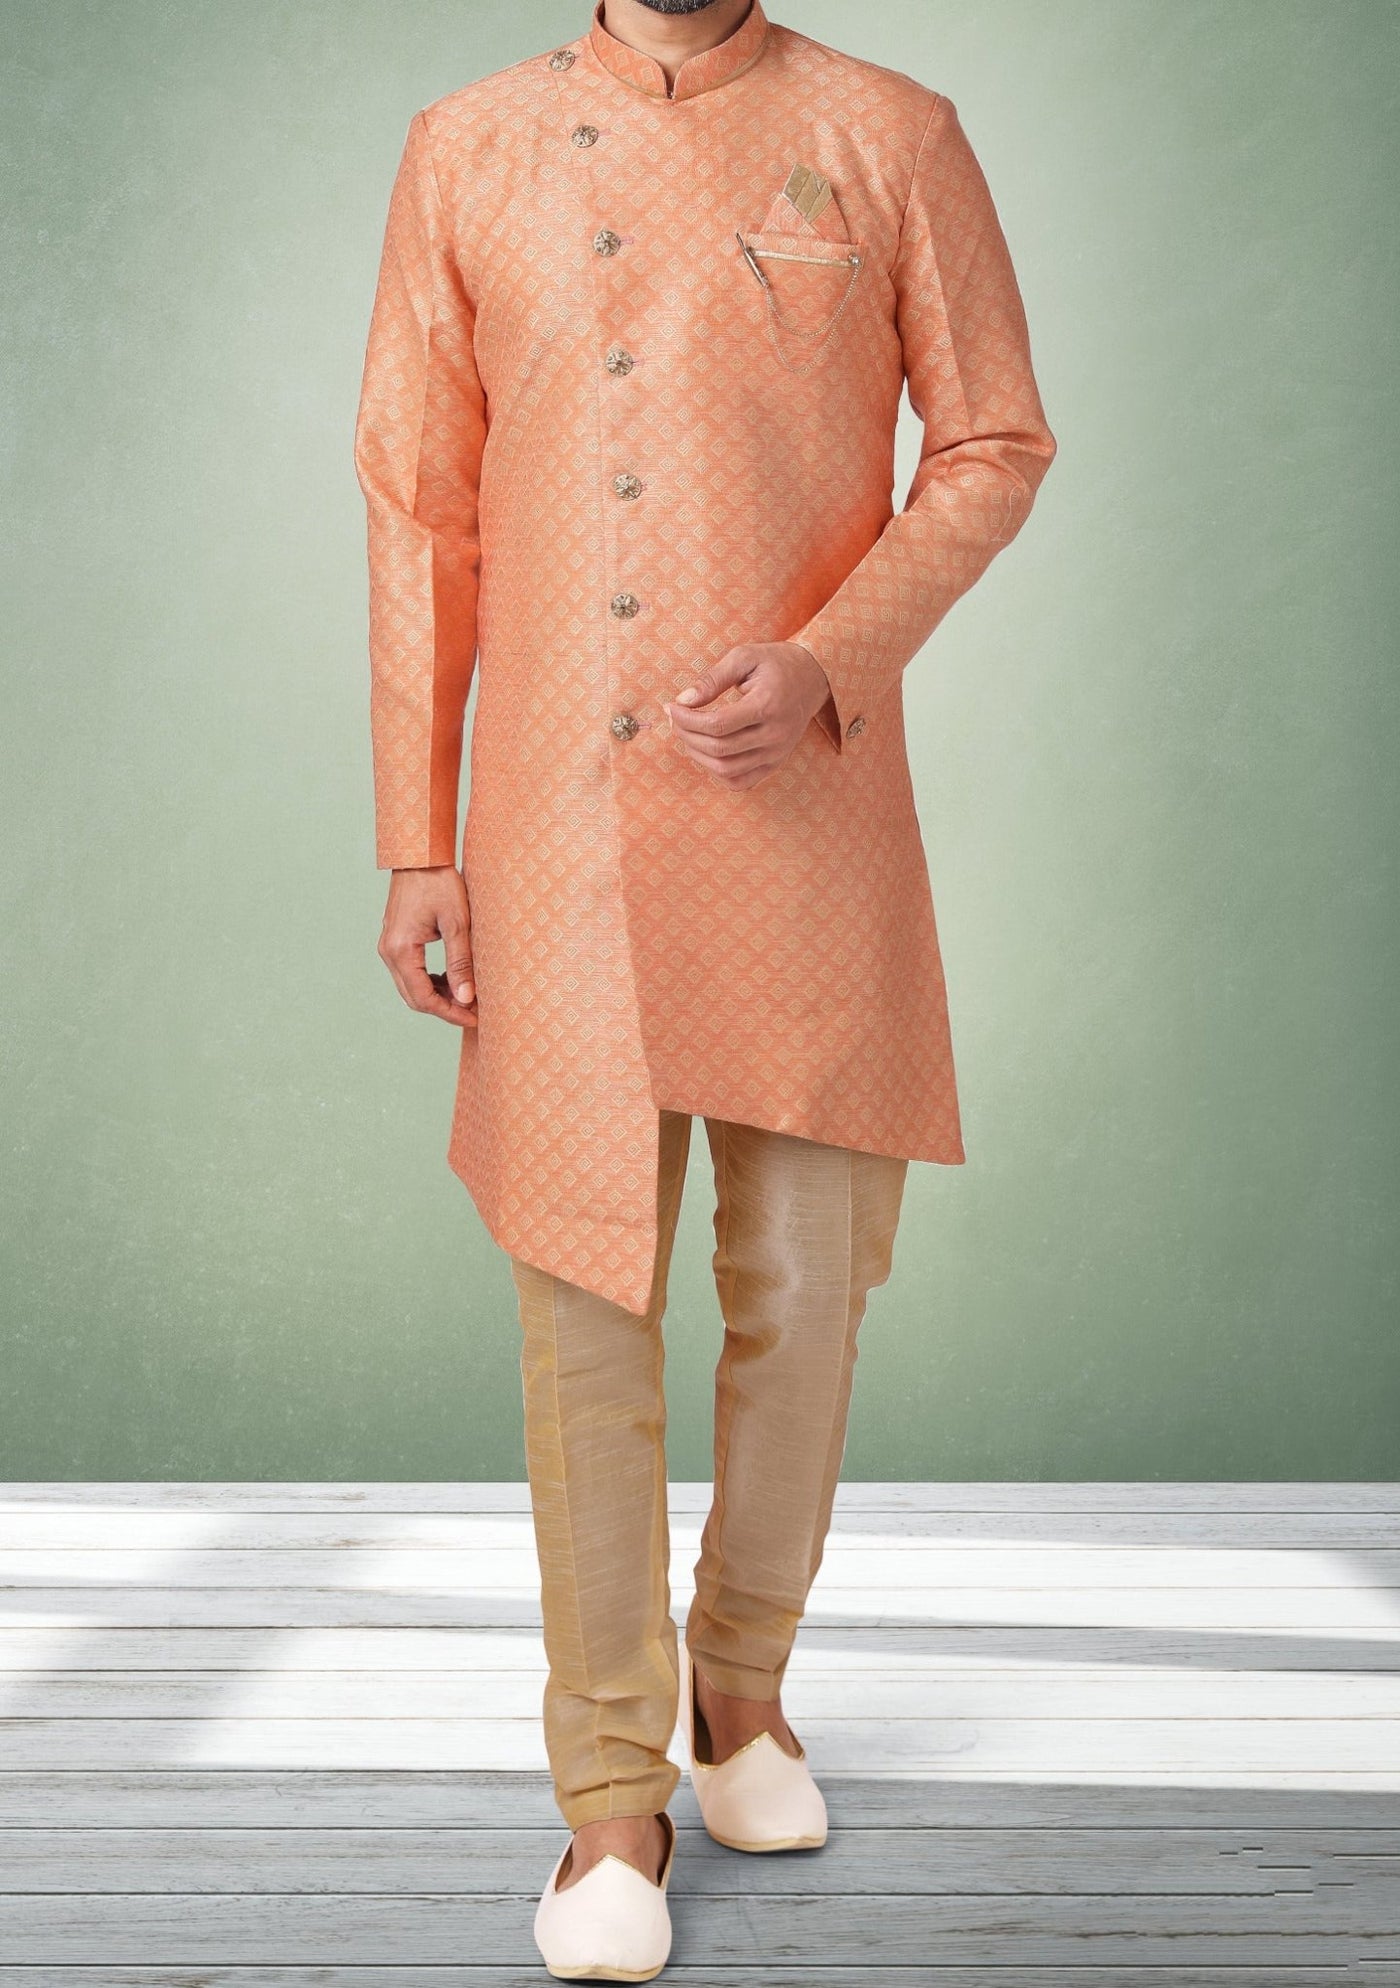 Men's Indo Western Party Wear Sherwani Suit - db18043